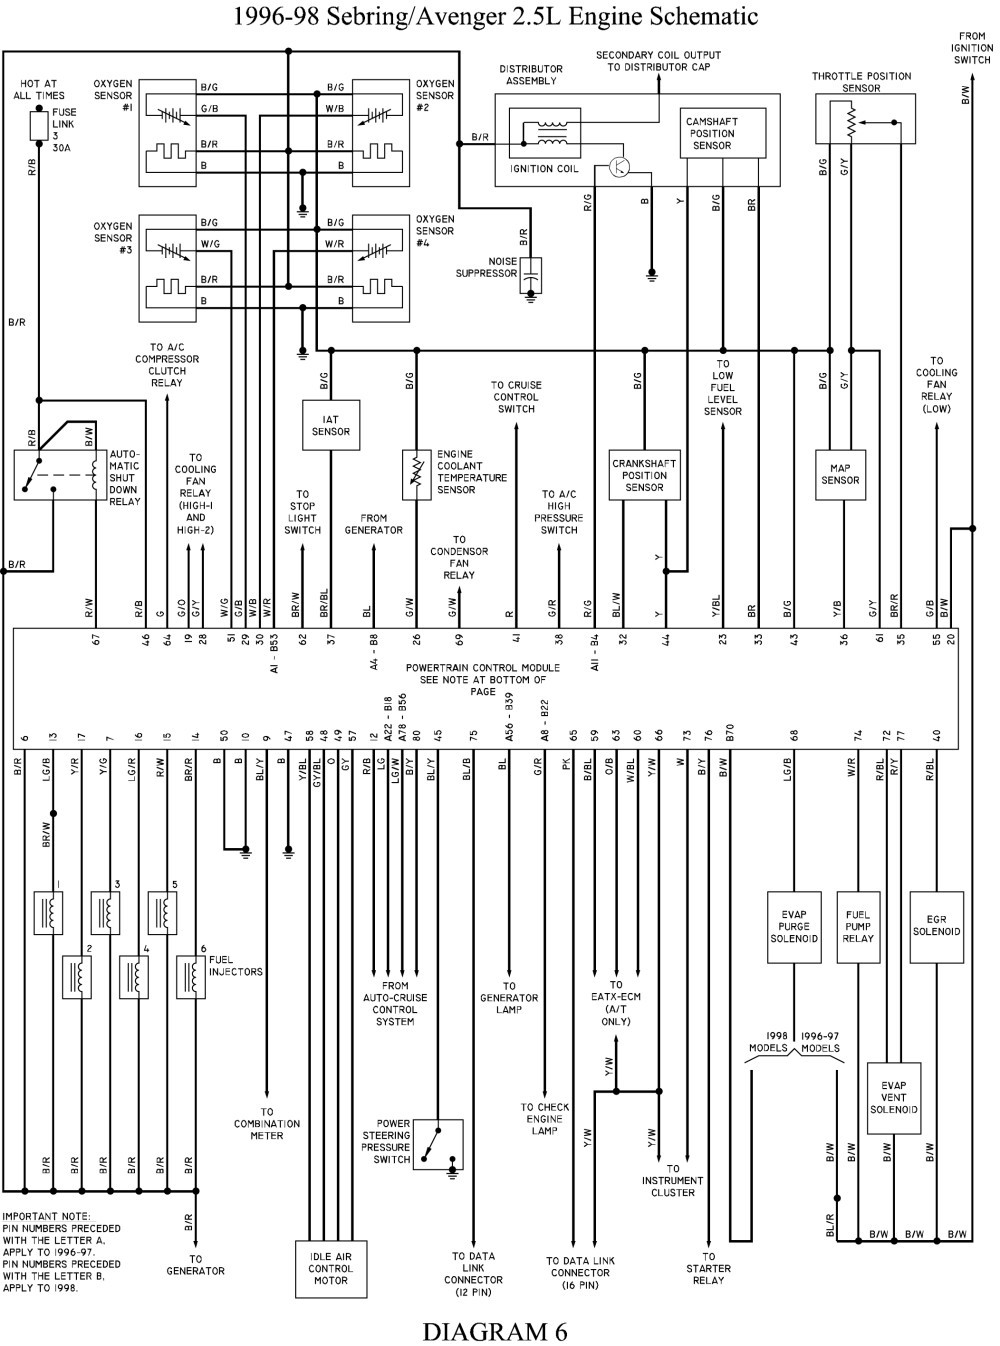 2002 chrysler sebring ignition wiring diagram wire center u2022 rh dododeli co 2002 Chrysler Sebring Engine Diagram 2004 Chrysler Sebring LX